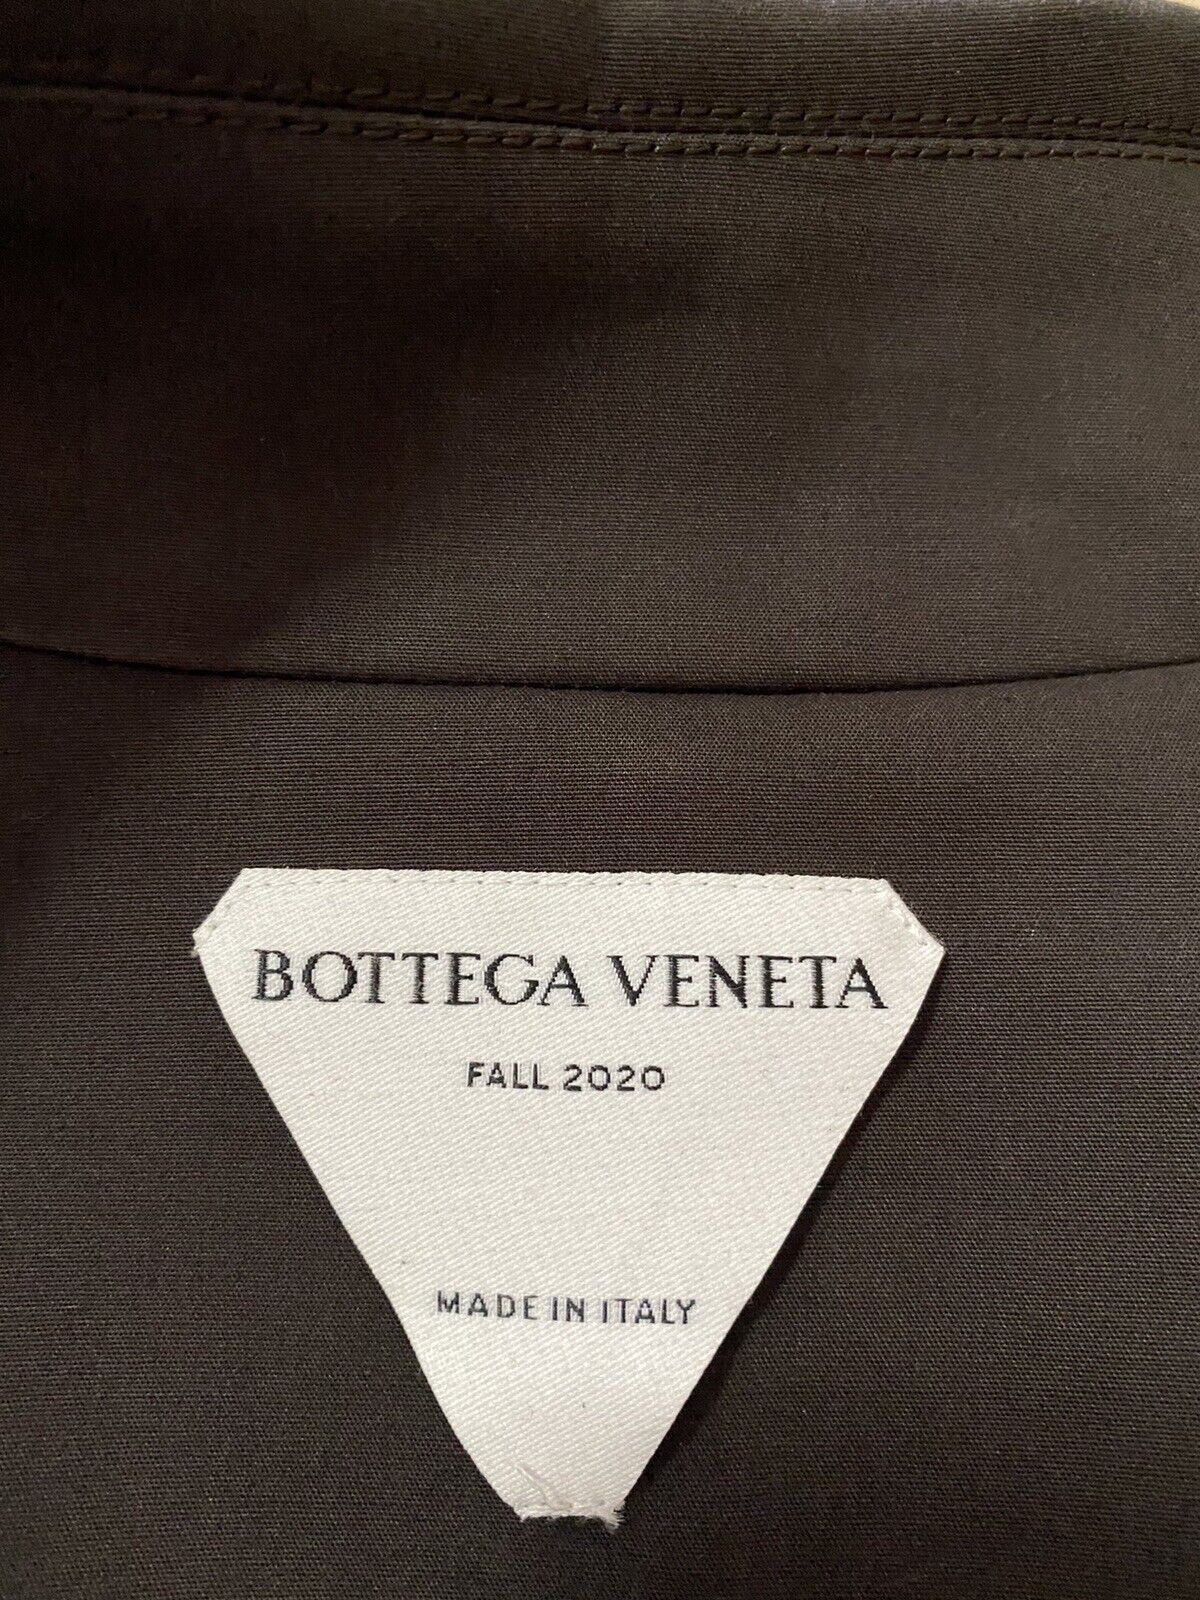 Новый мужской водонепроницаемый хлопковый плащ Bottega Veneta, 2650 долларов США, коричневый 46 США/56 ЕС